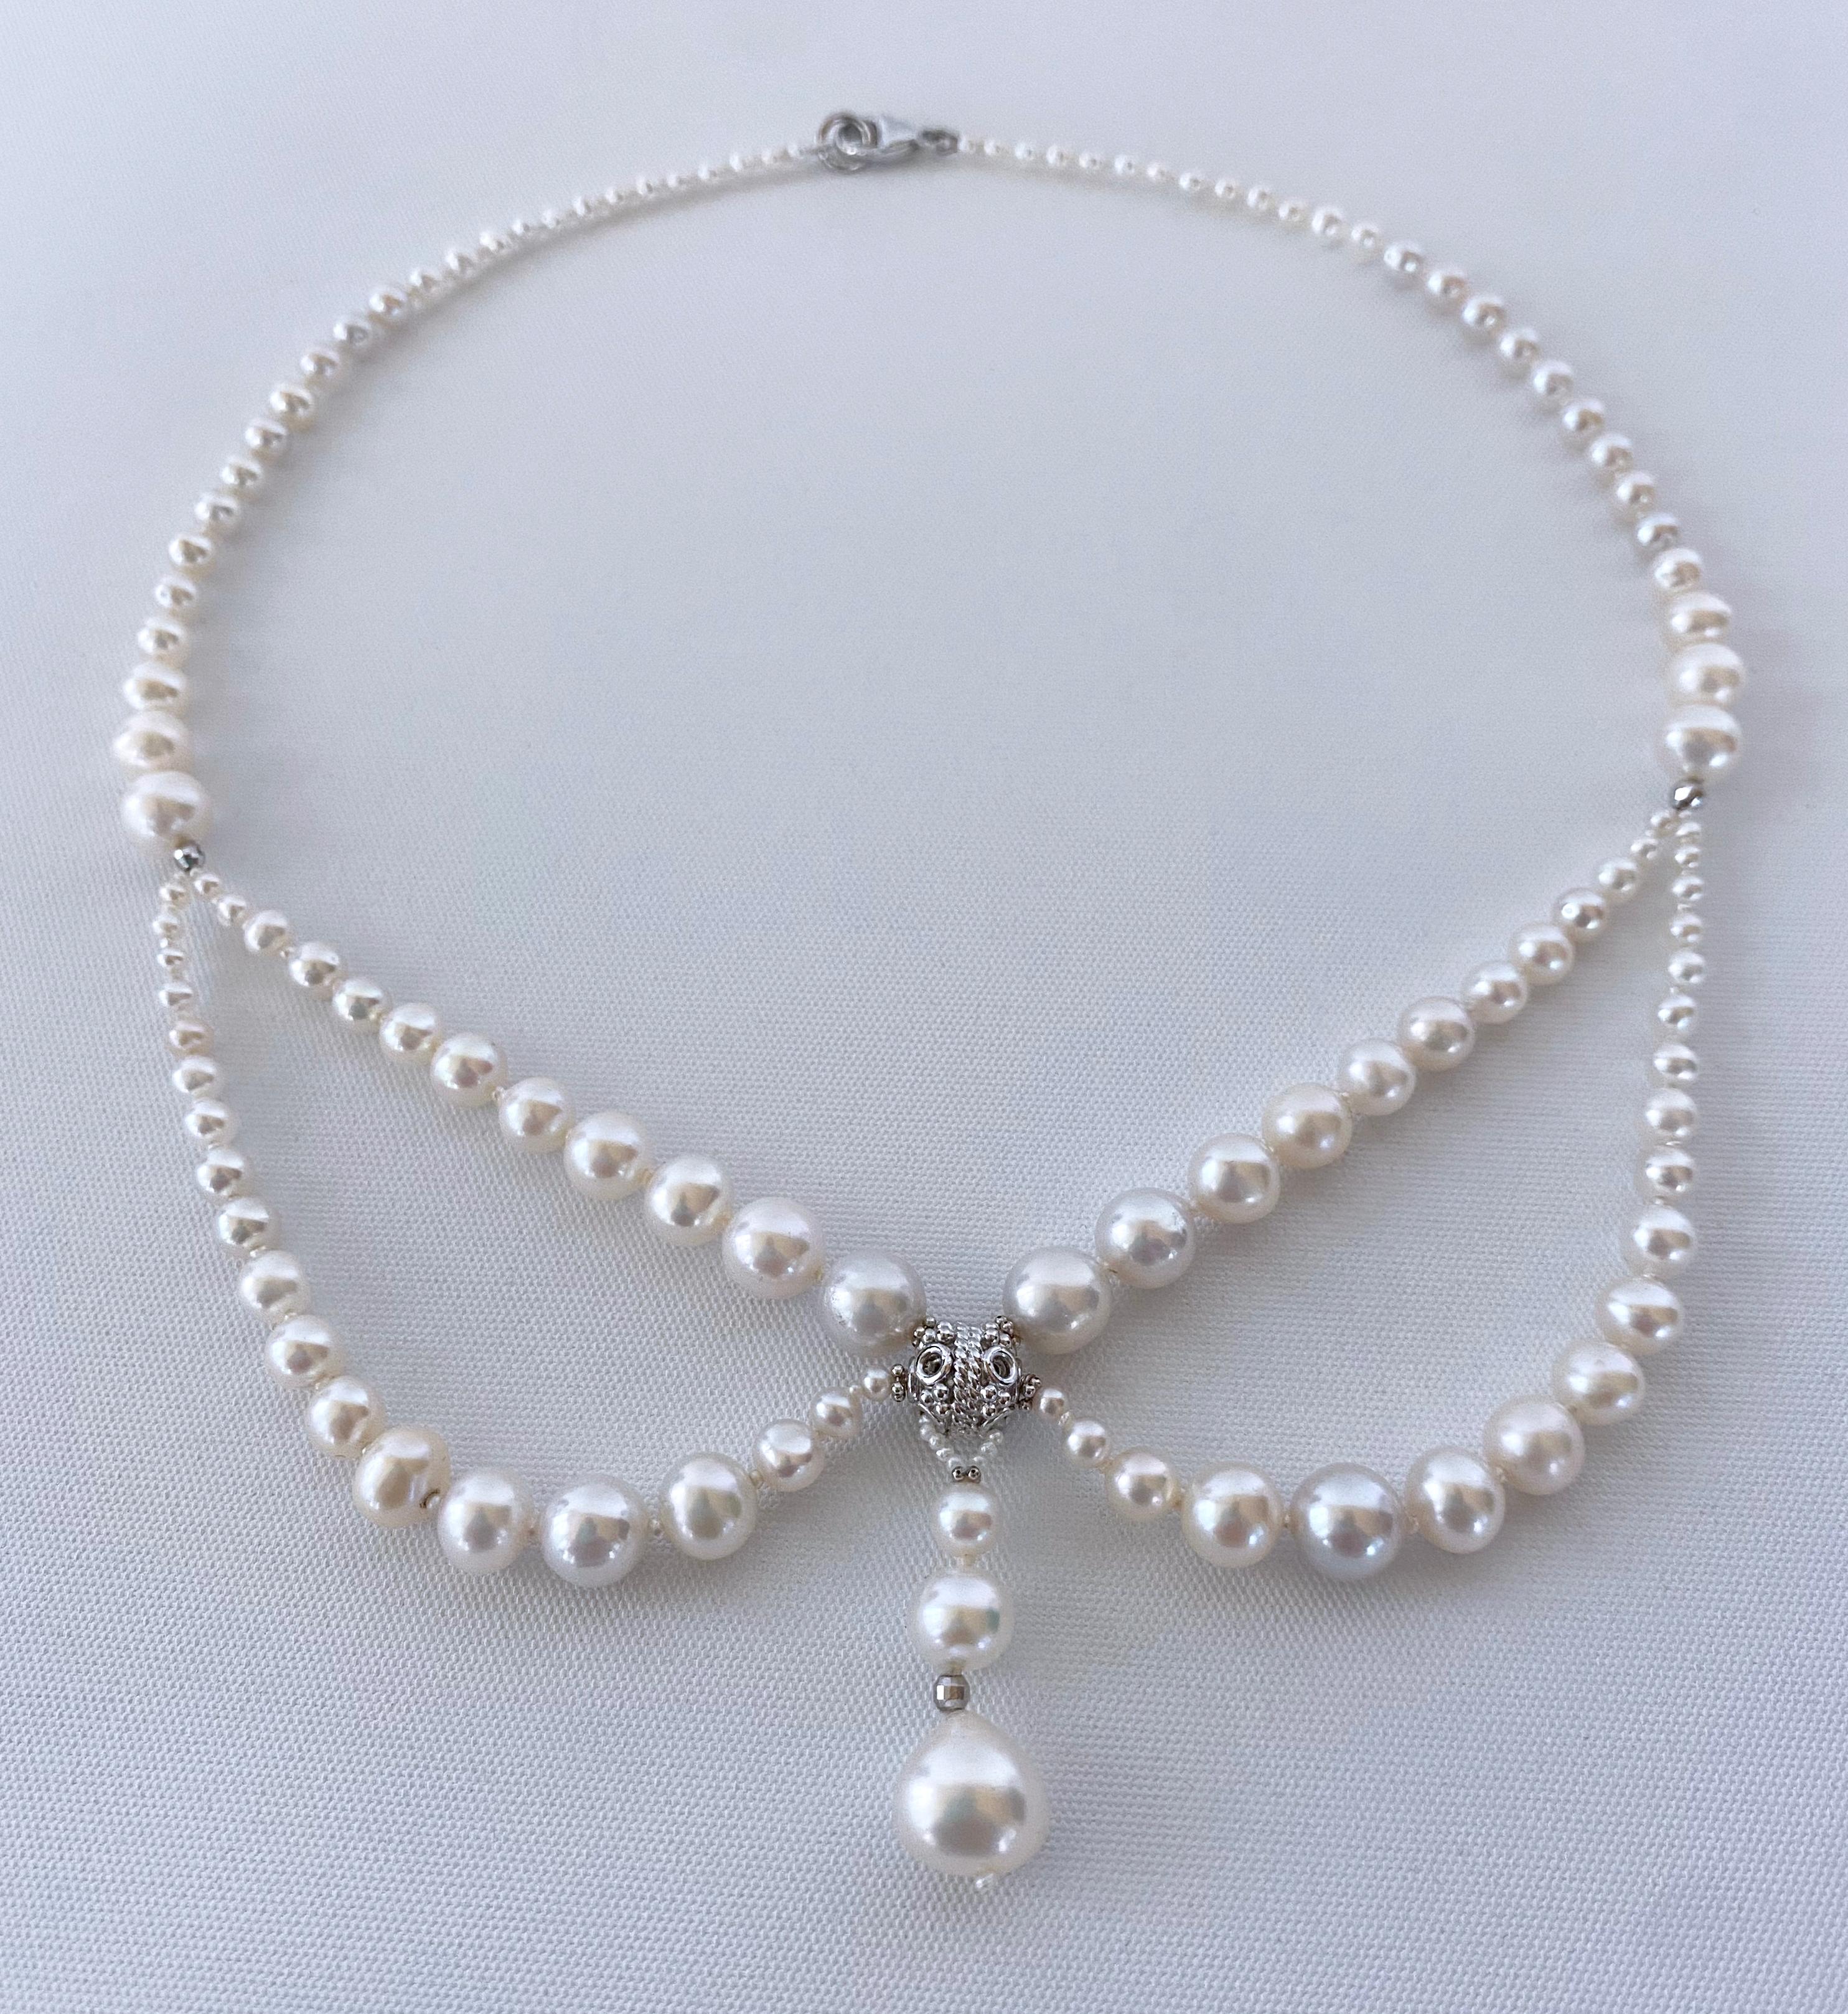 draping pearls